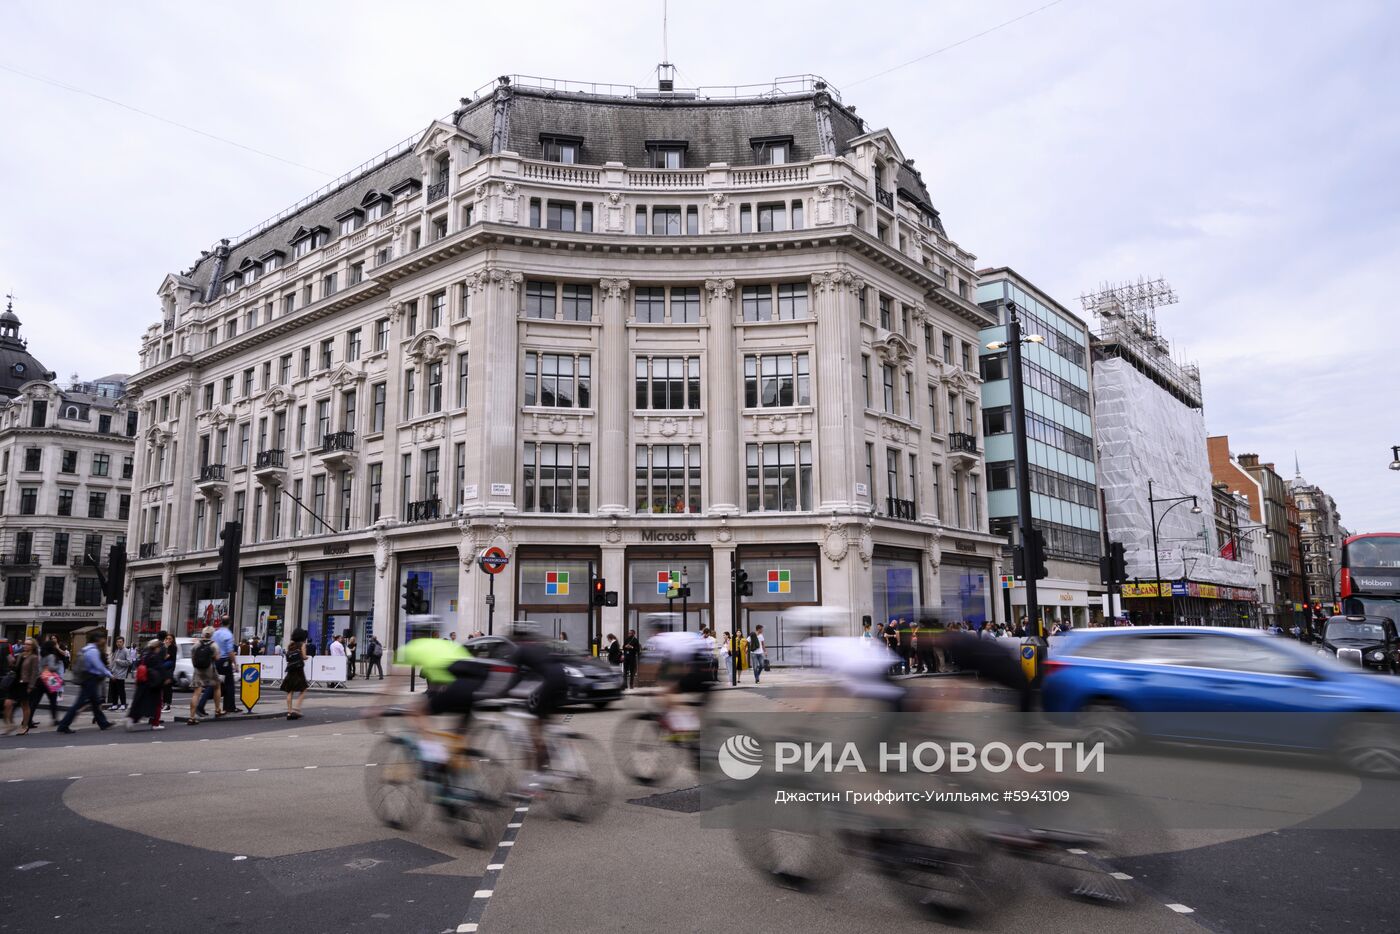 Открытие флагманского магазина Microsoft в Лондоне